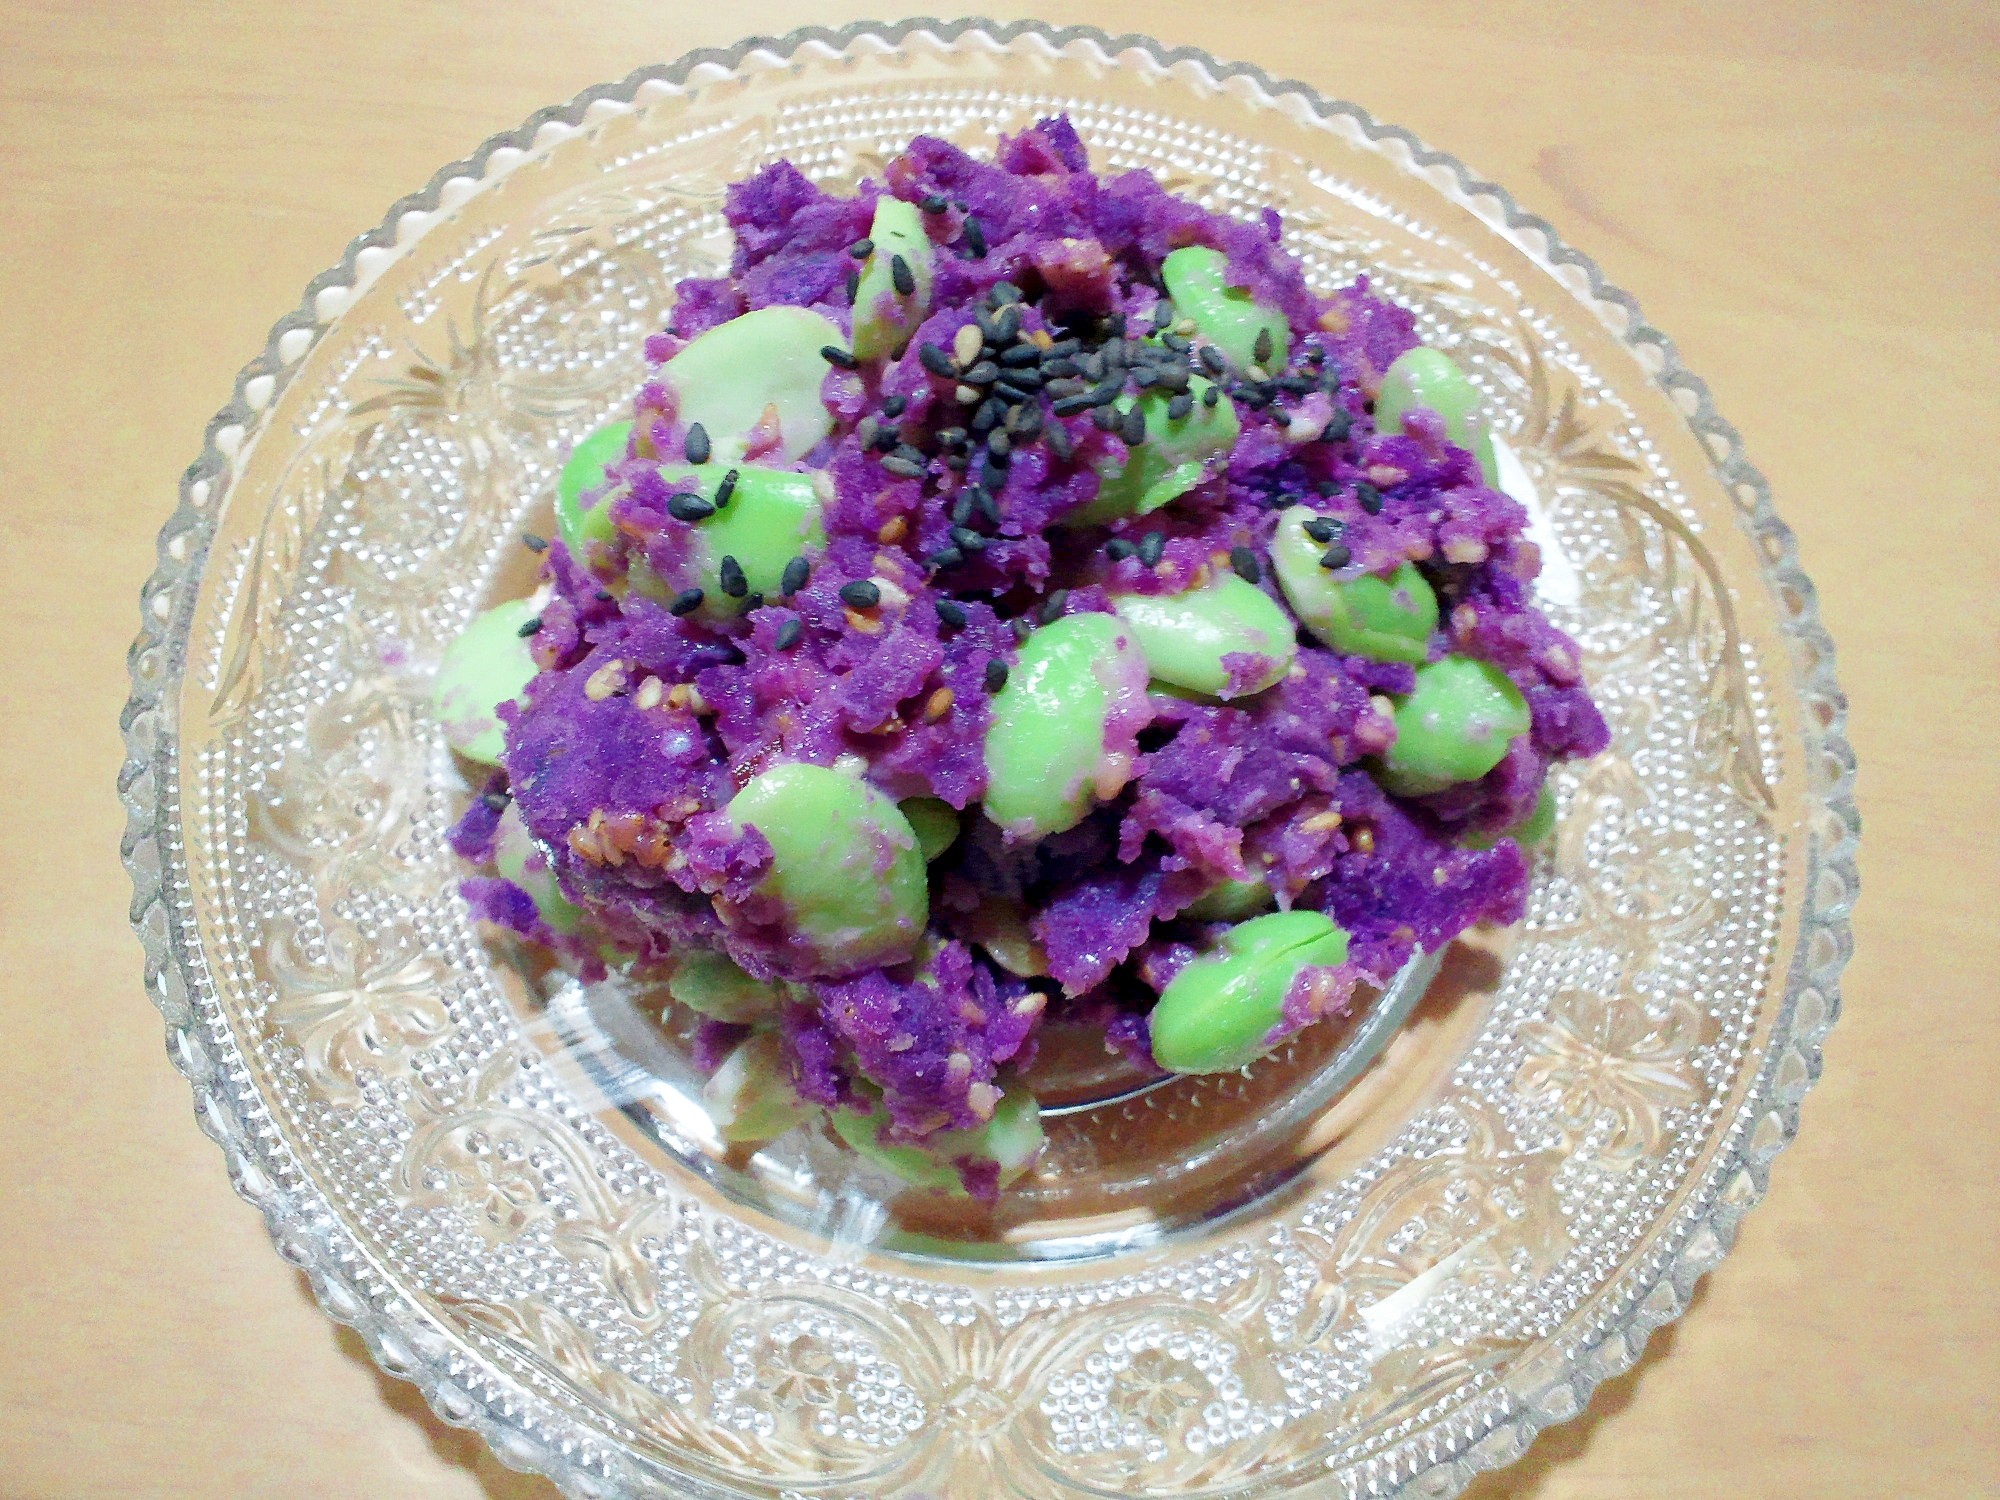 食卓が華やかに☆彩り綺麗な、紫芋と枝豆のサラダ☆